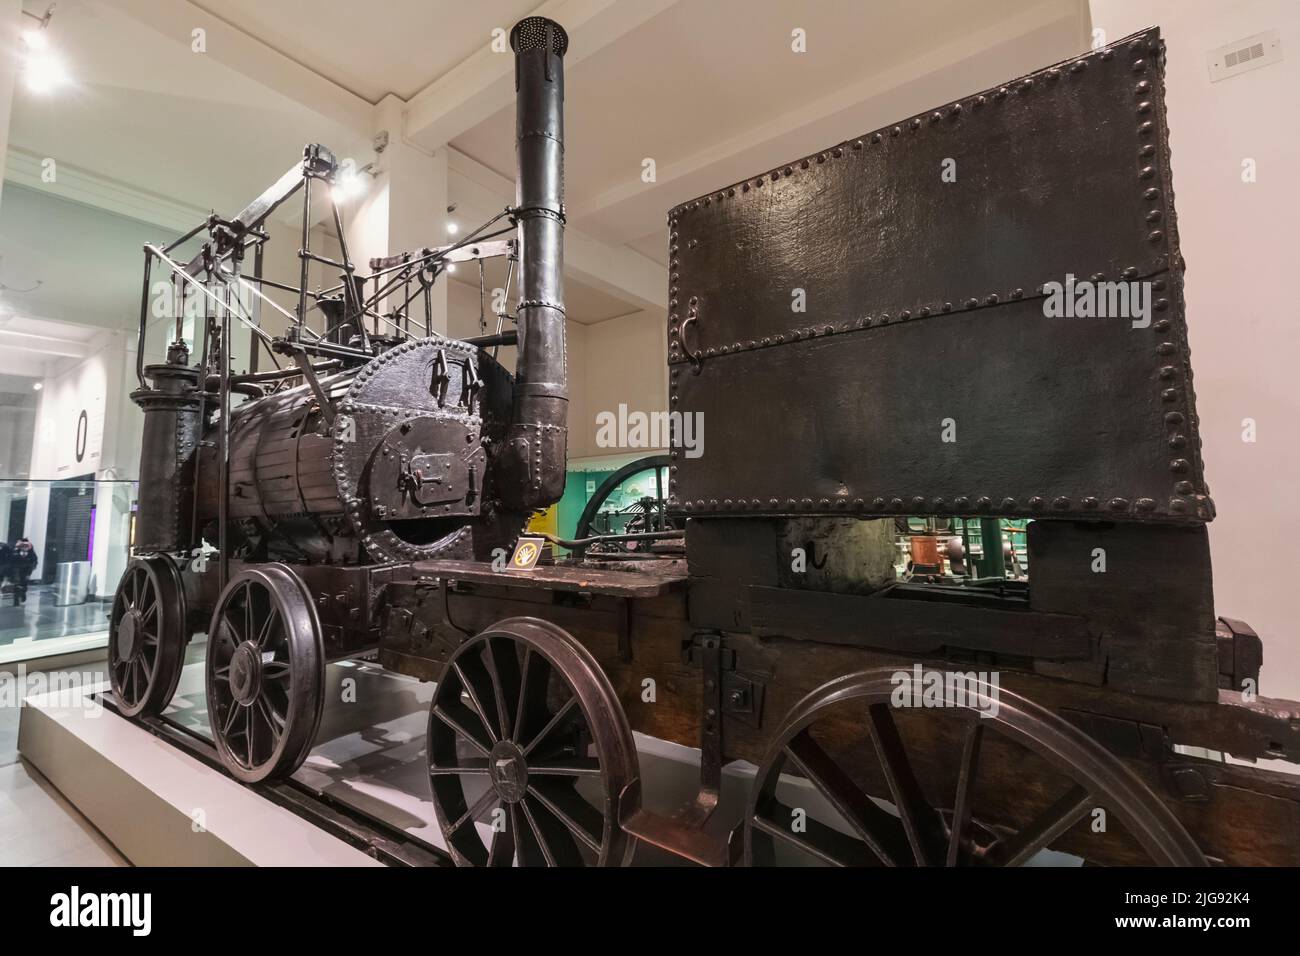 Inghilterra, Londra, South Kensington, Museo della Scienza, esposizione della locomotiva Puffing Billy, la più antica locomotiva della ferrovia a vapore sopravvissuta al mondo datata 1814 Foto Stock